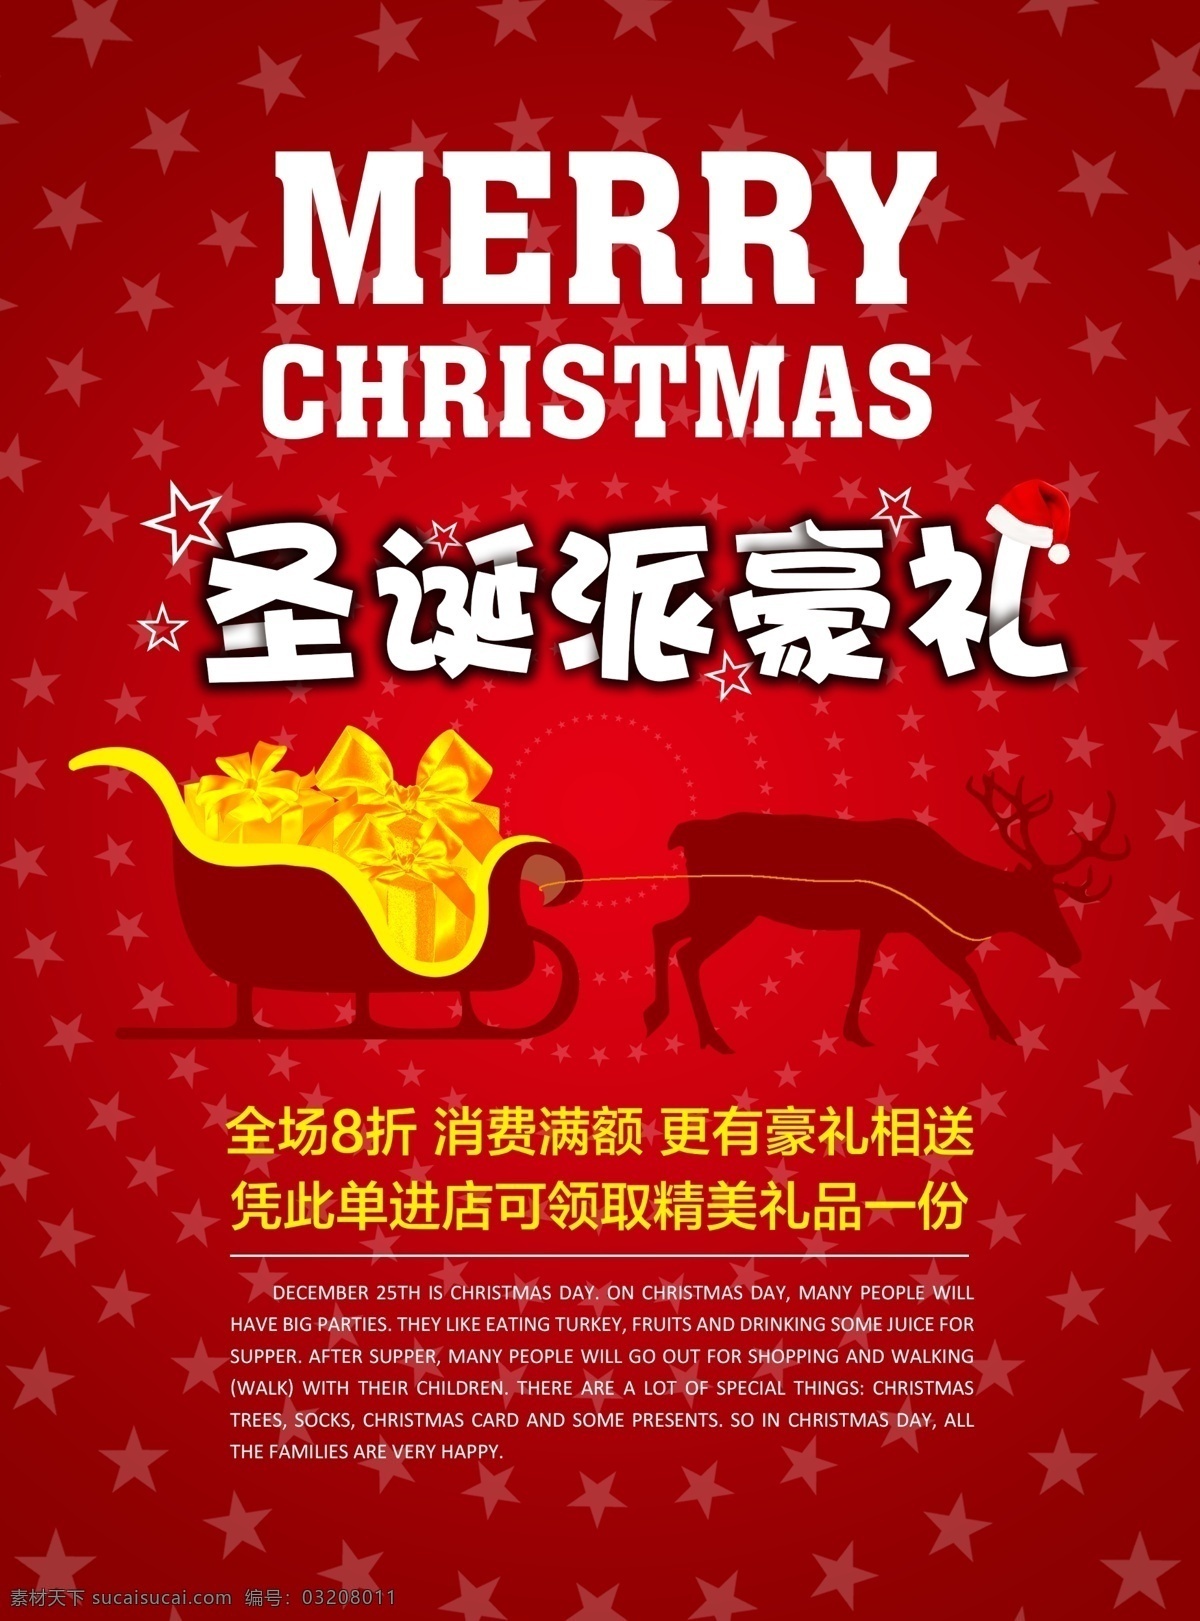 红色 圣诞节 节日 促销 礼品 驯鹿 圣诞车 圣诞 活动 星星 merry christmas